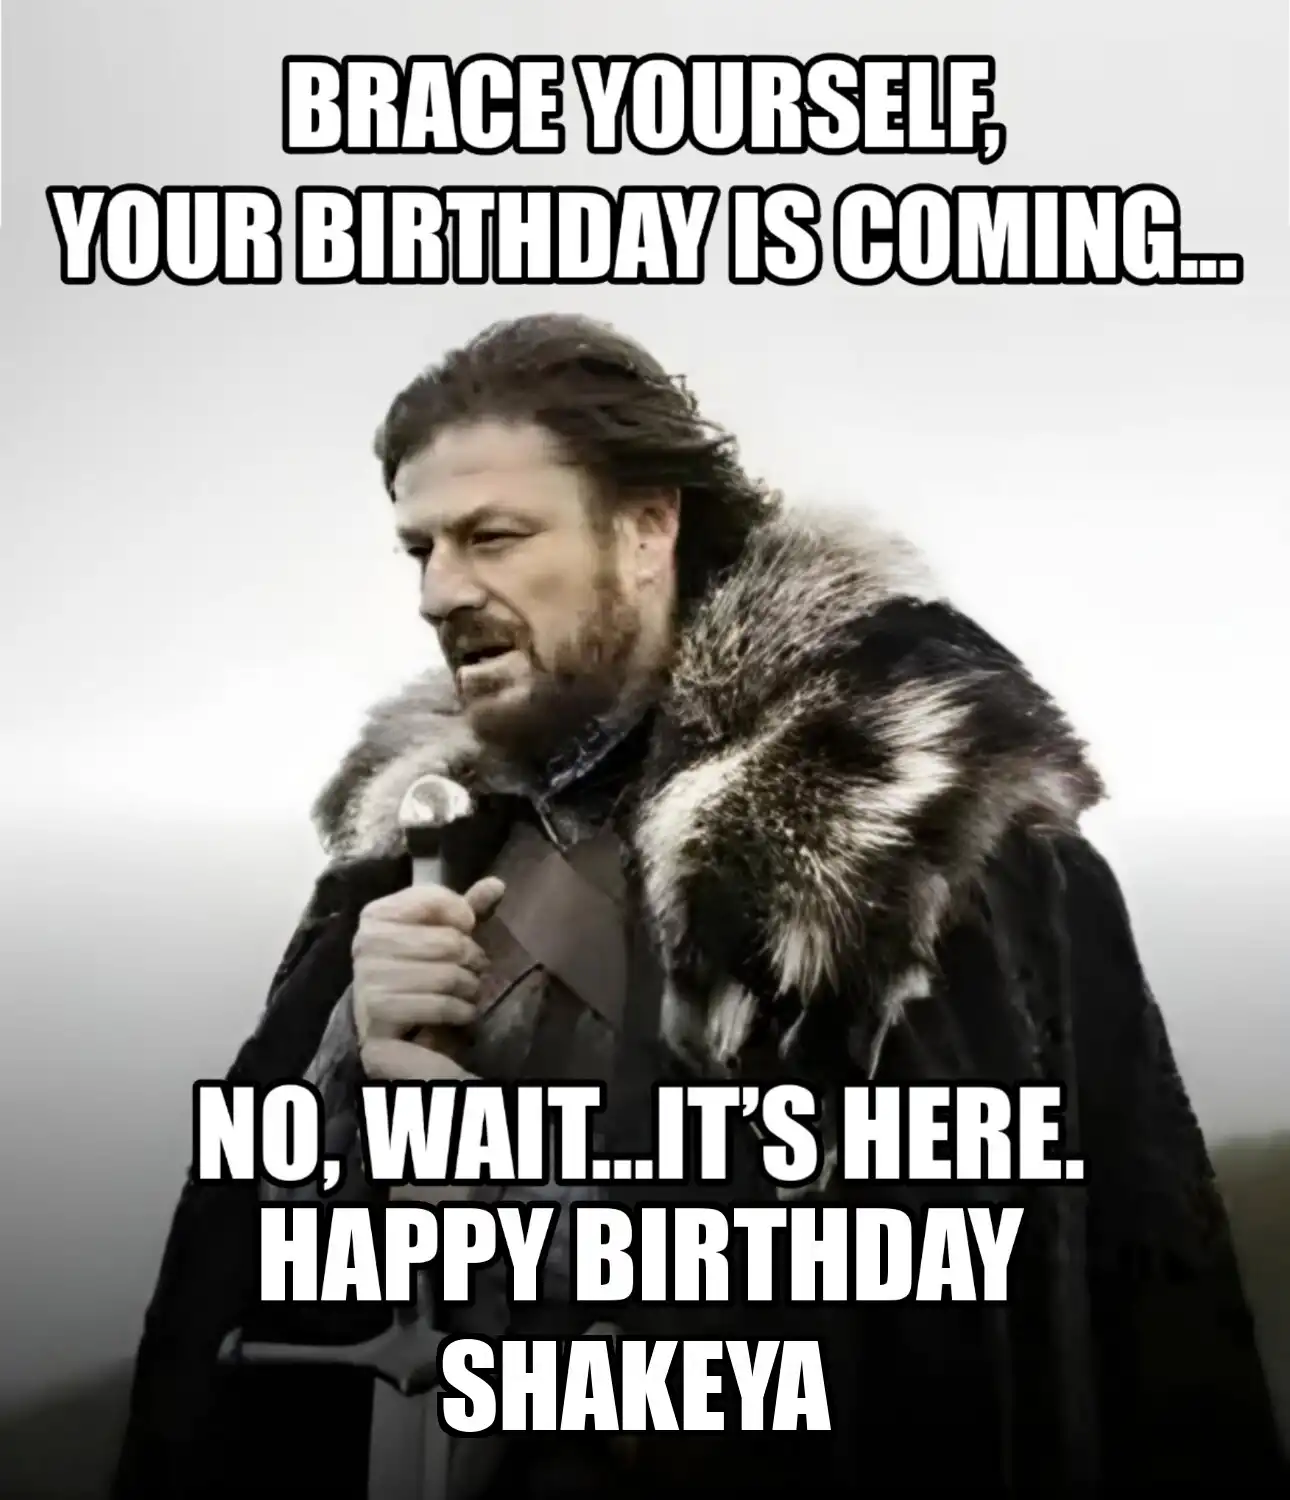 Happy Birthday Shakeya Brace Yourself Your Birthday Is Coming Meme